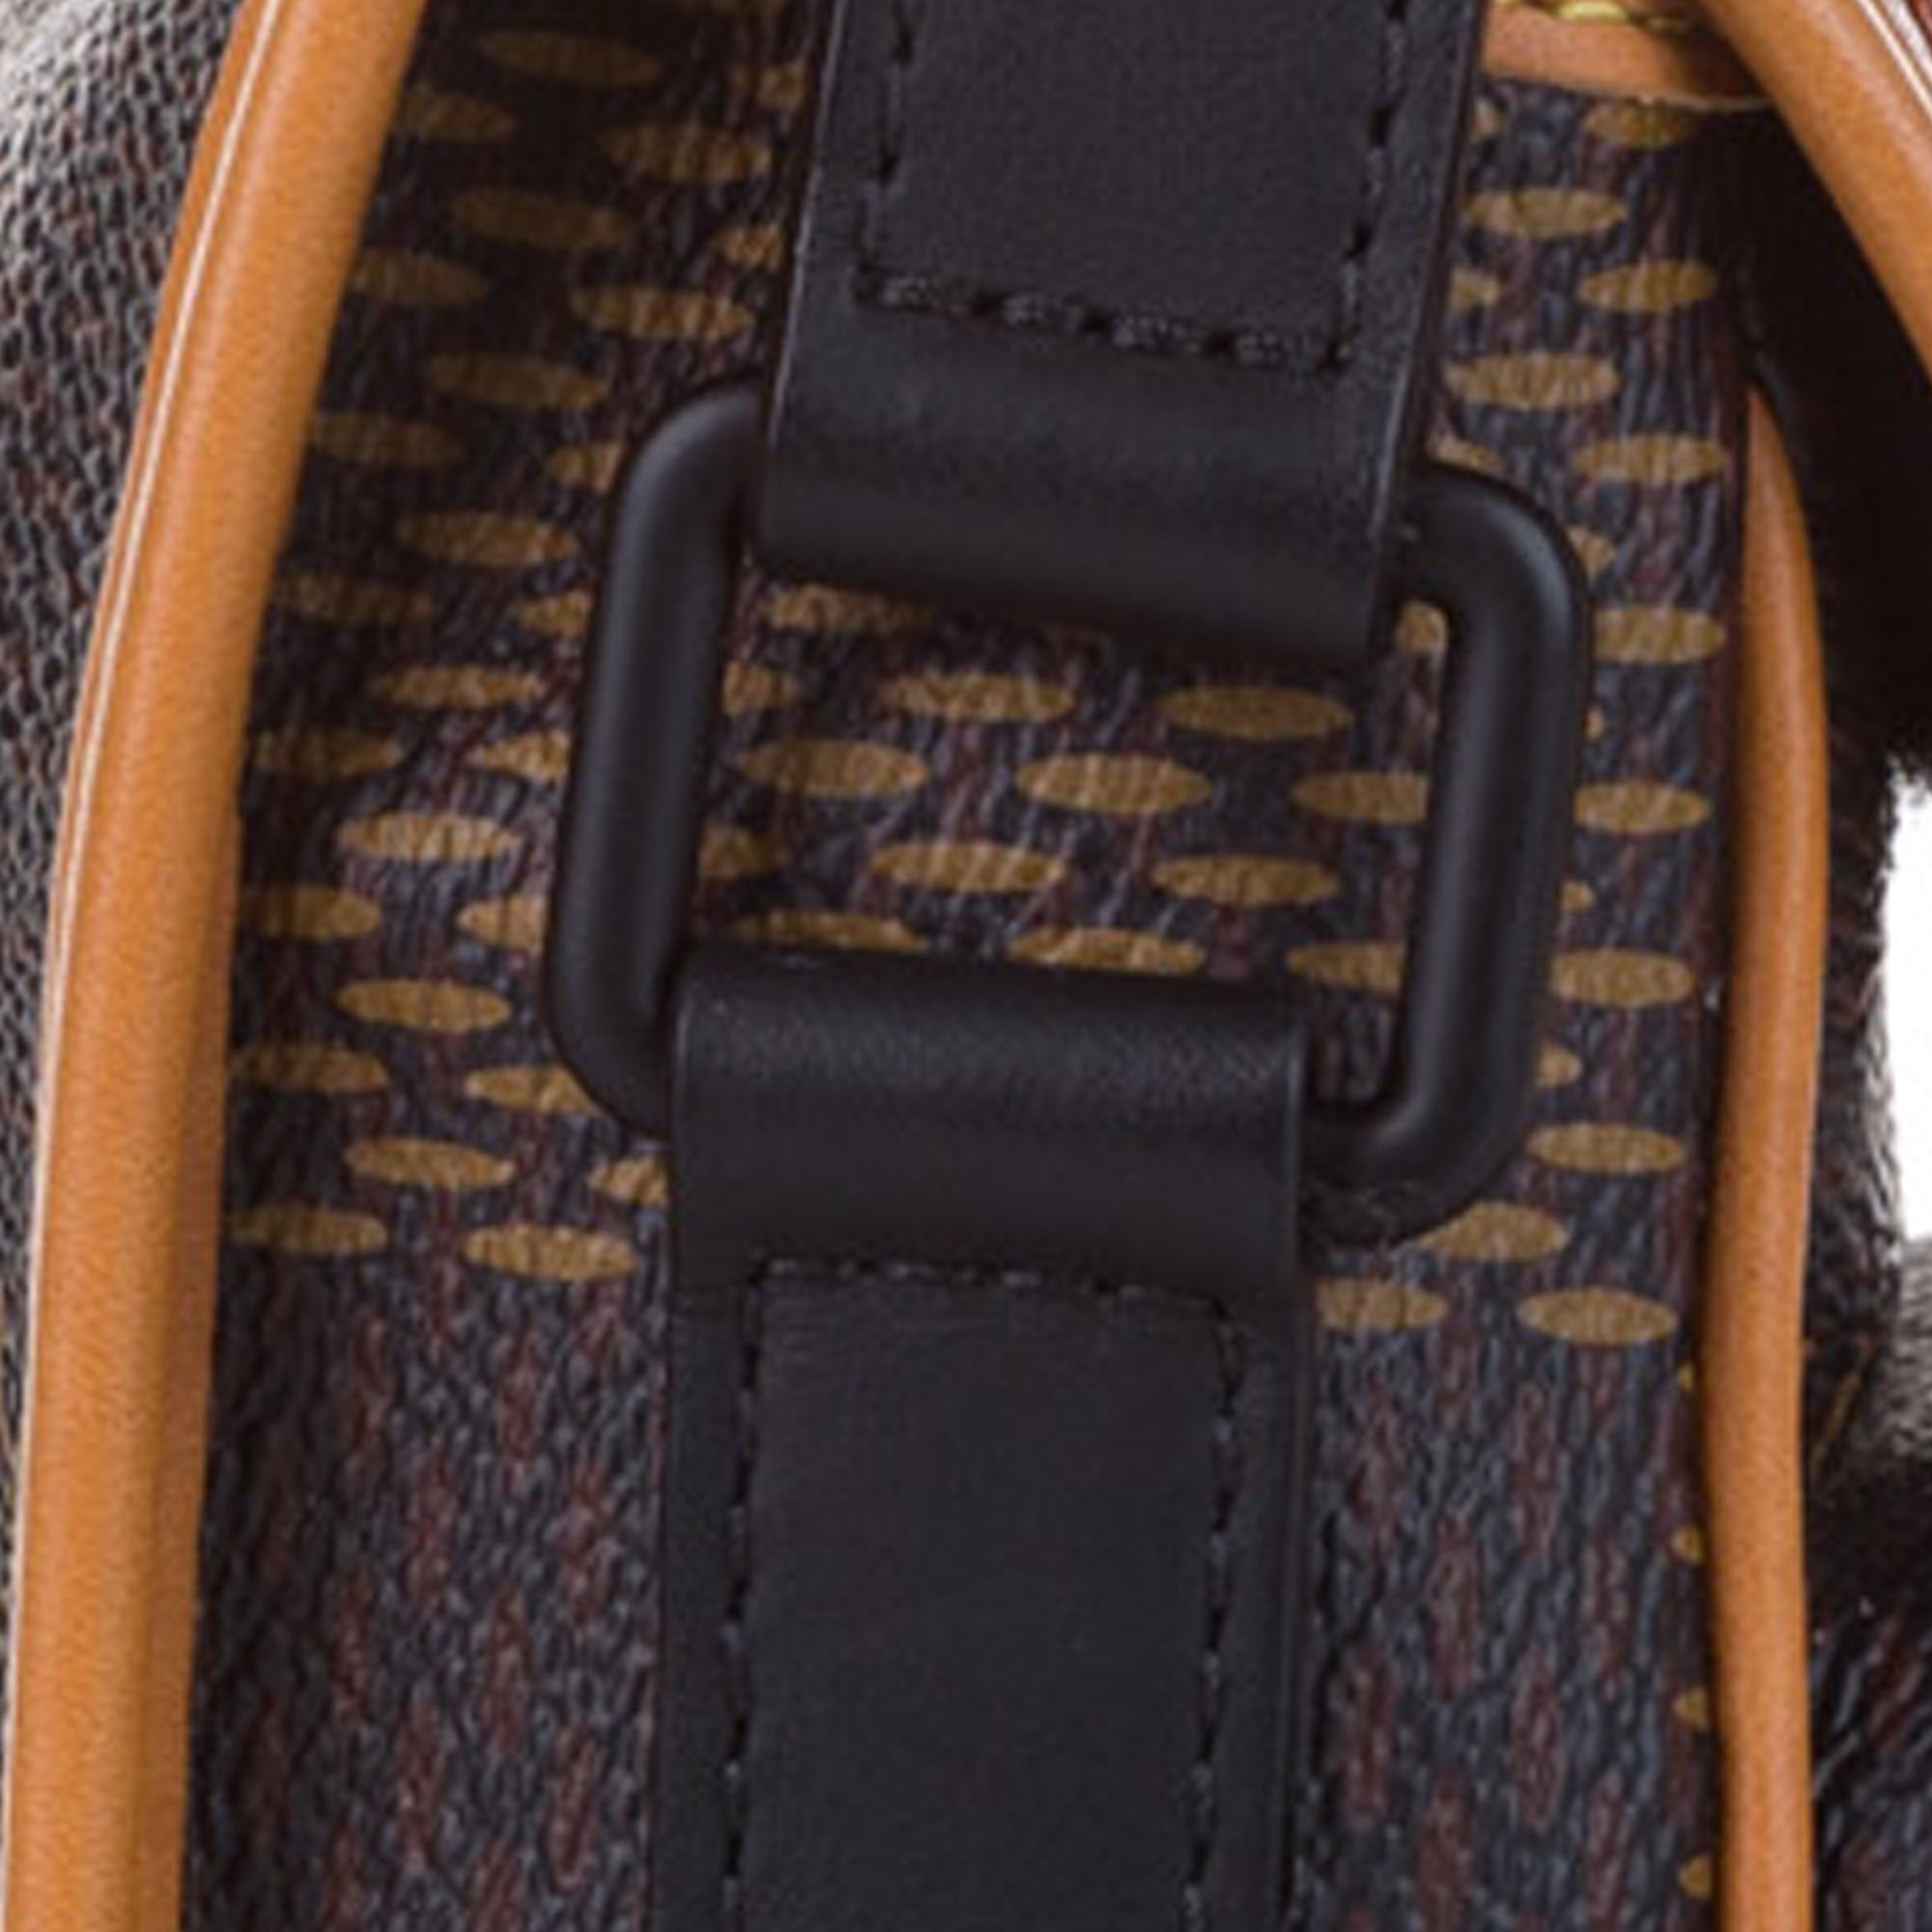 Louis Vuitton X Nigo Tote Damier Ebene Giant Mini Brown In, 43% OFF